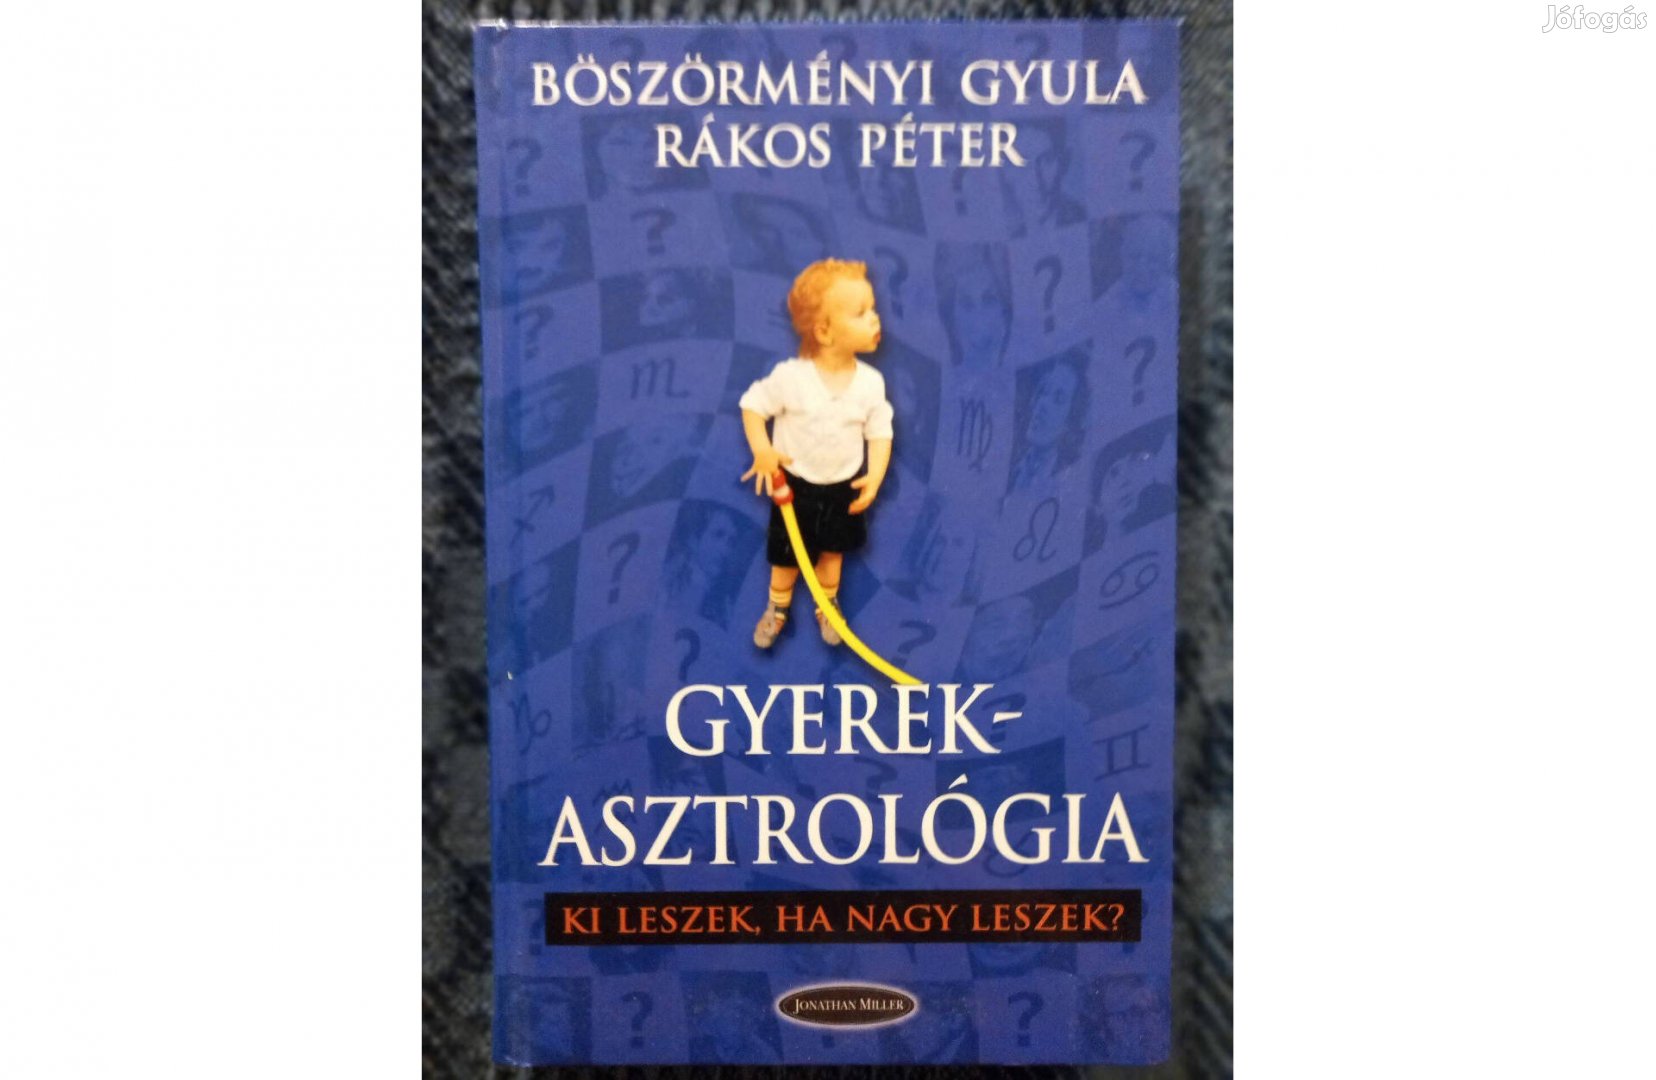 Böszörményi Gyula - Rákos Péter: Gyerekasztrológia c. könyv eladó